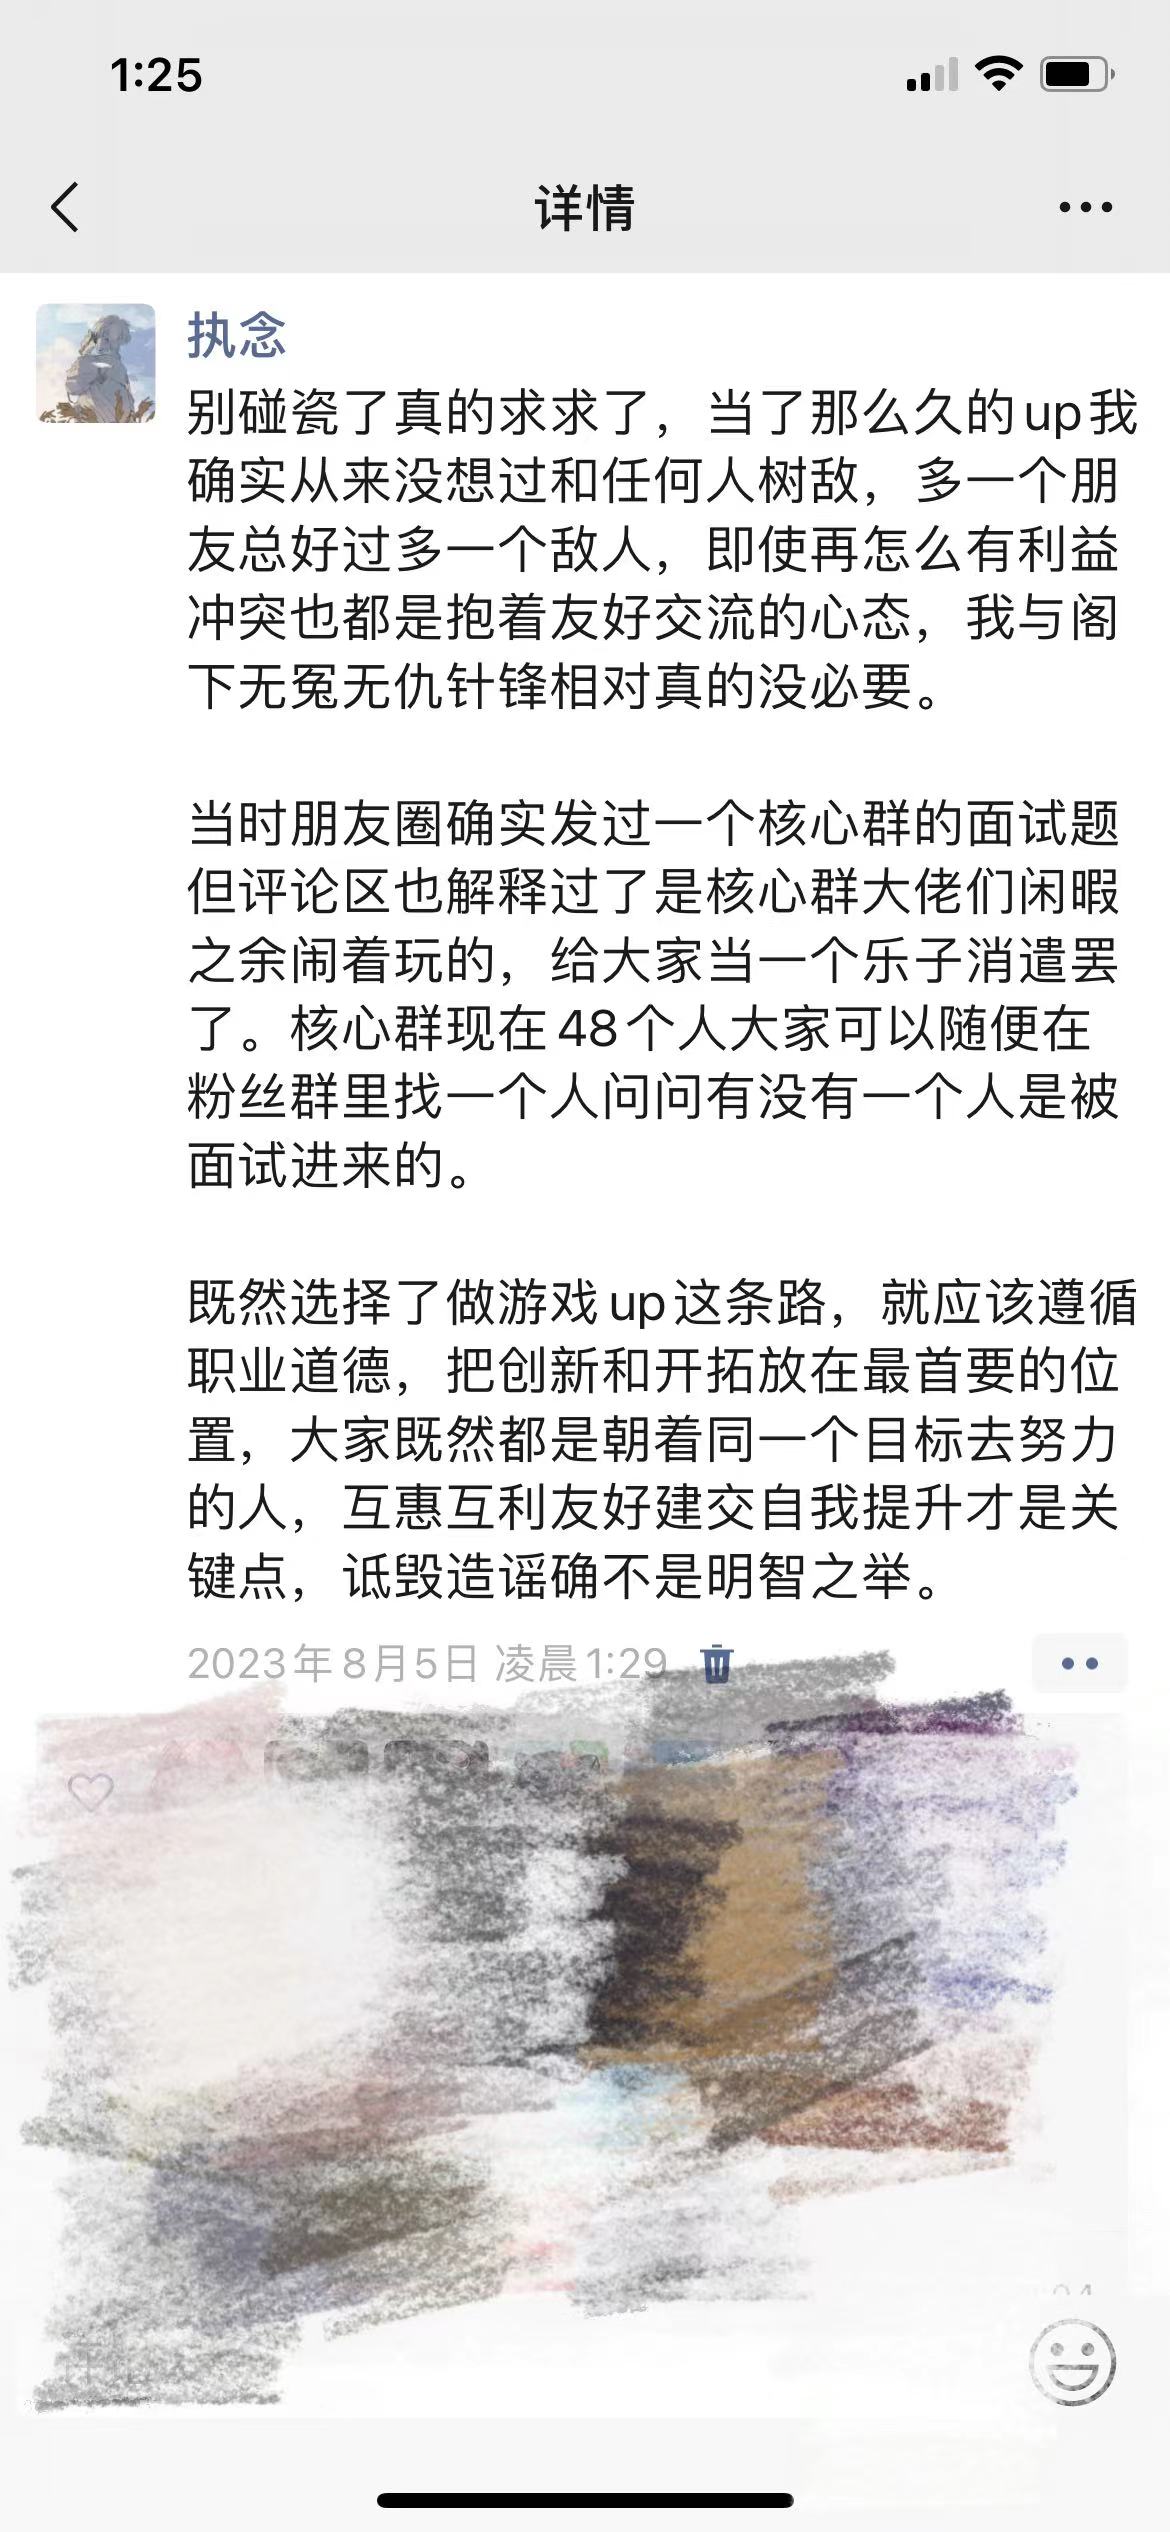 丹江口税务局全面推行“说理式执法” - 湖北日报新闻客户端